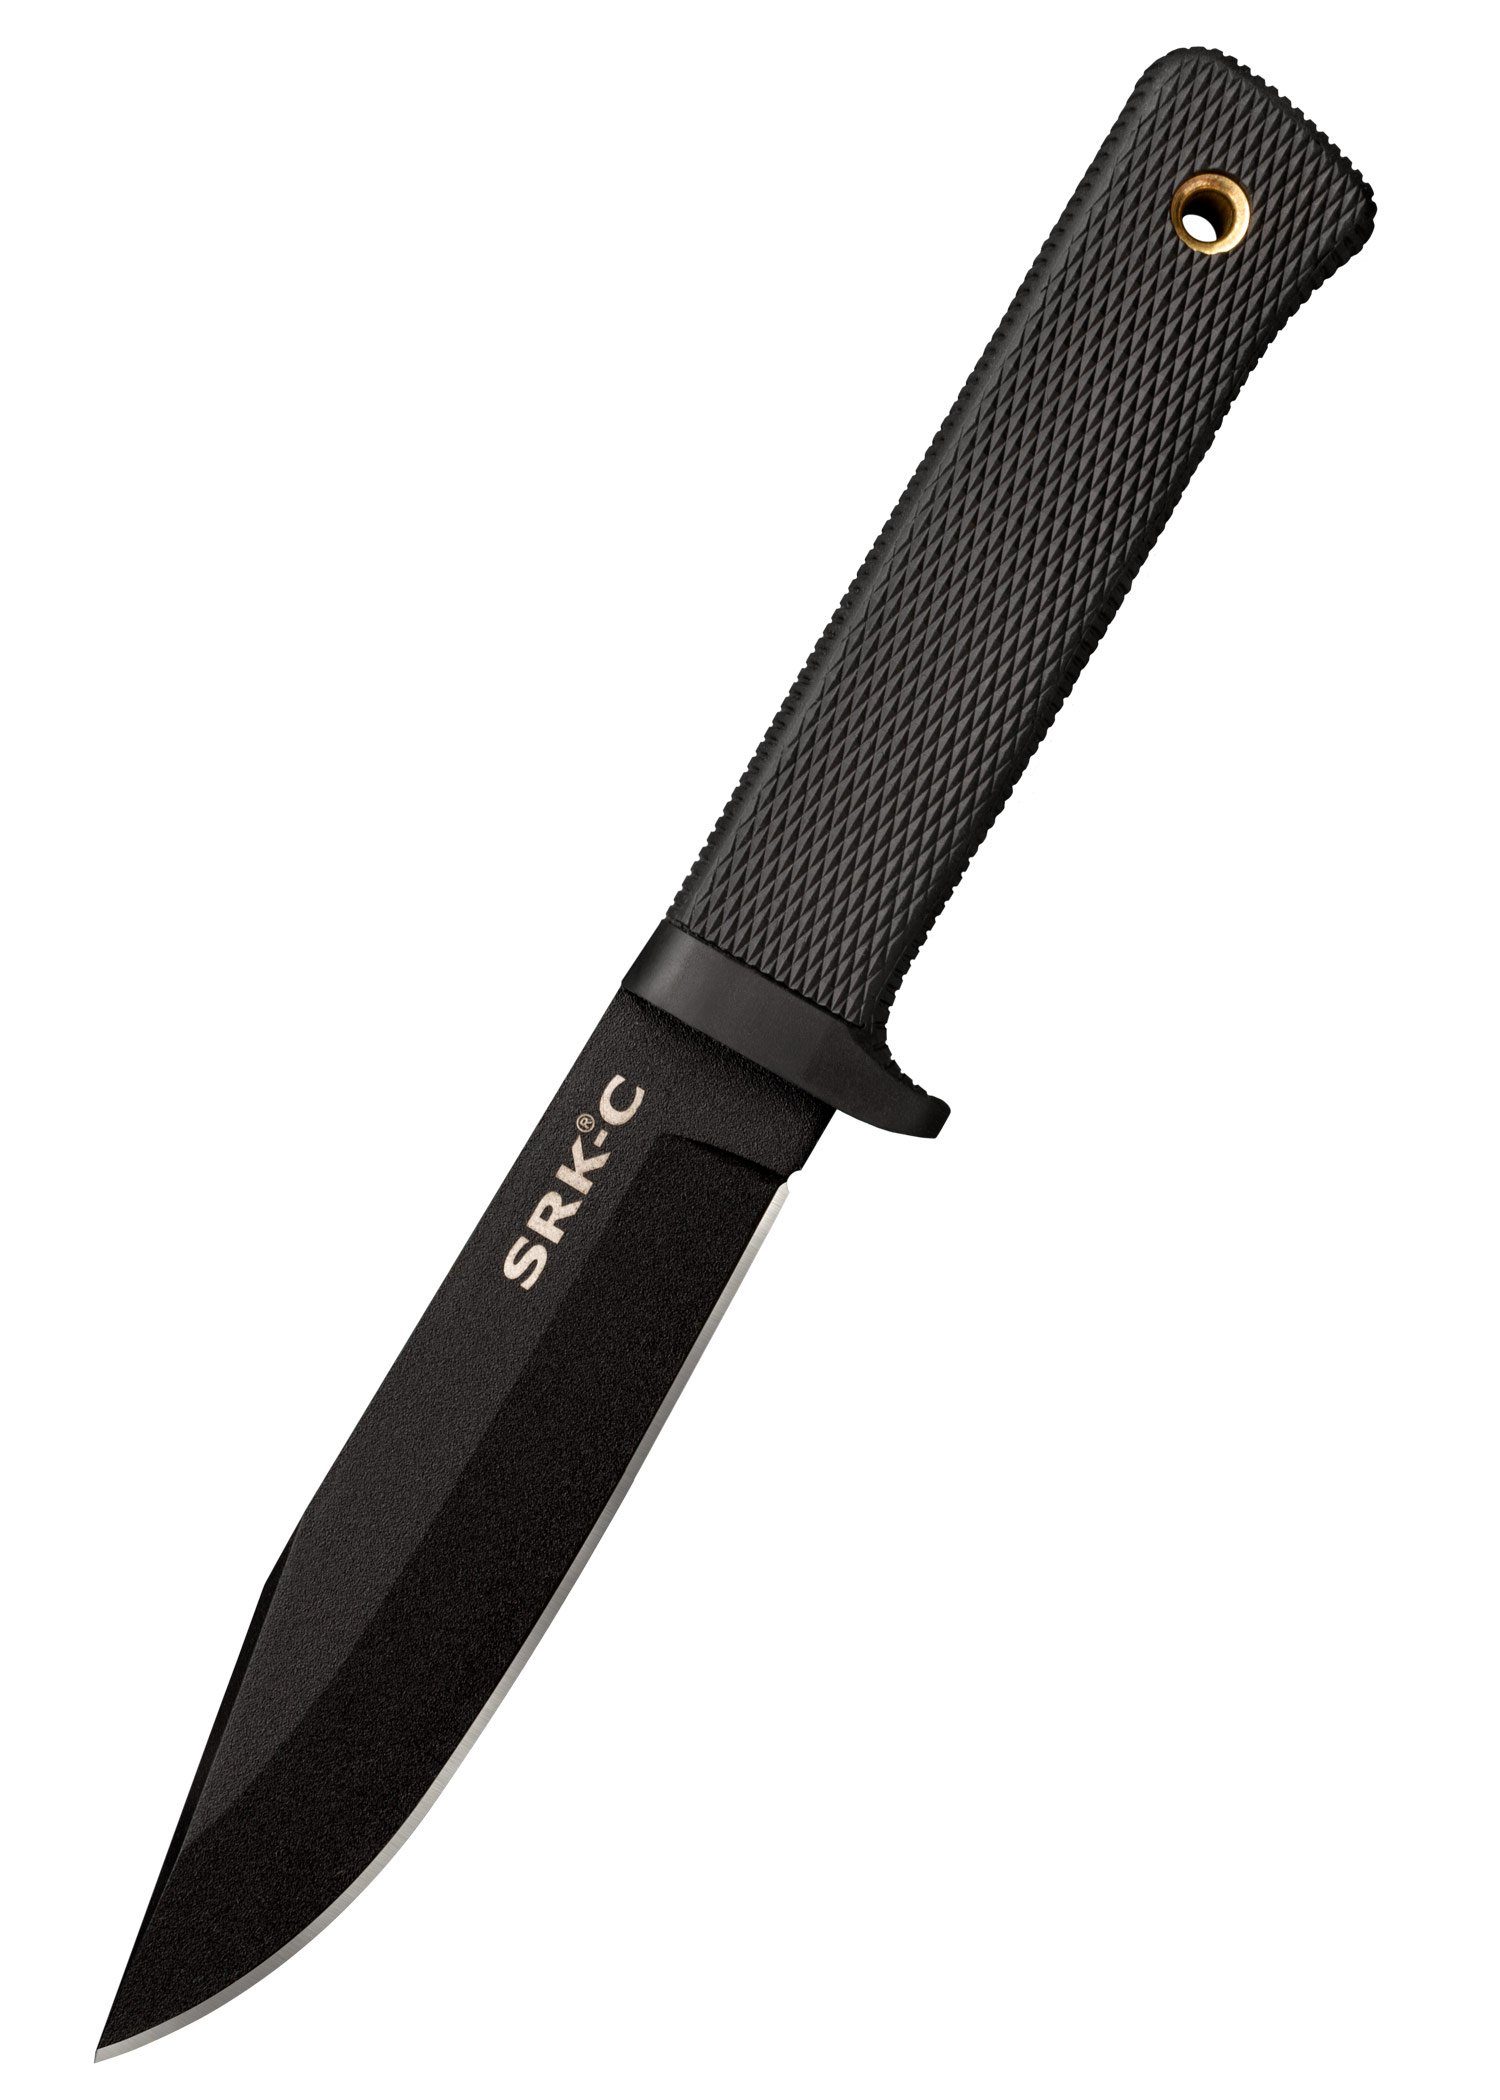 Messer Knife Cold mit Steel feststehendes Steel SRK Compact Scheide Rettungsmesser Survival Cold